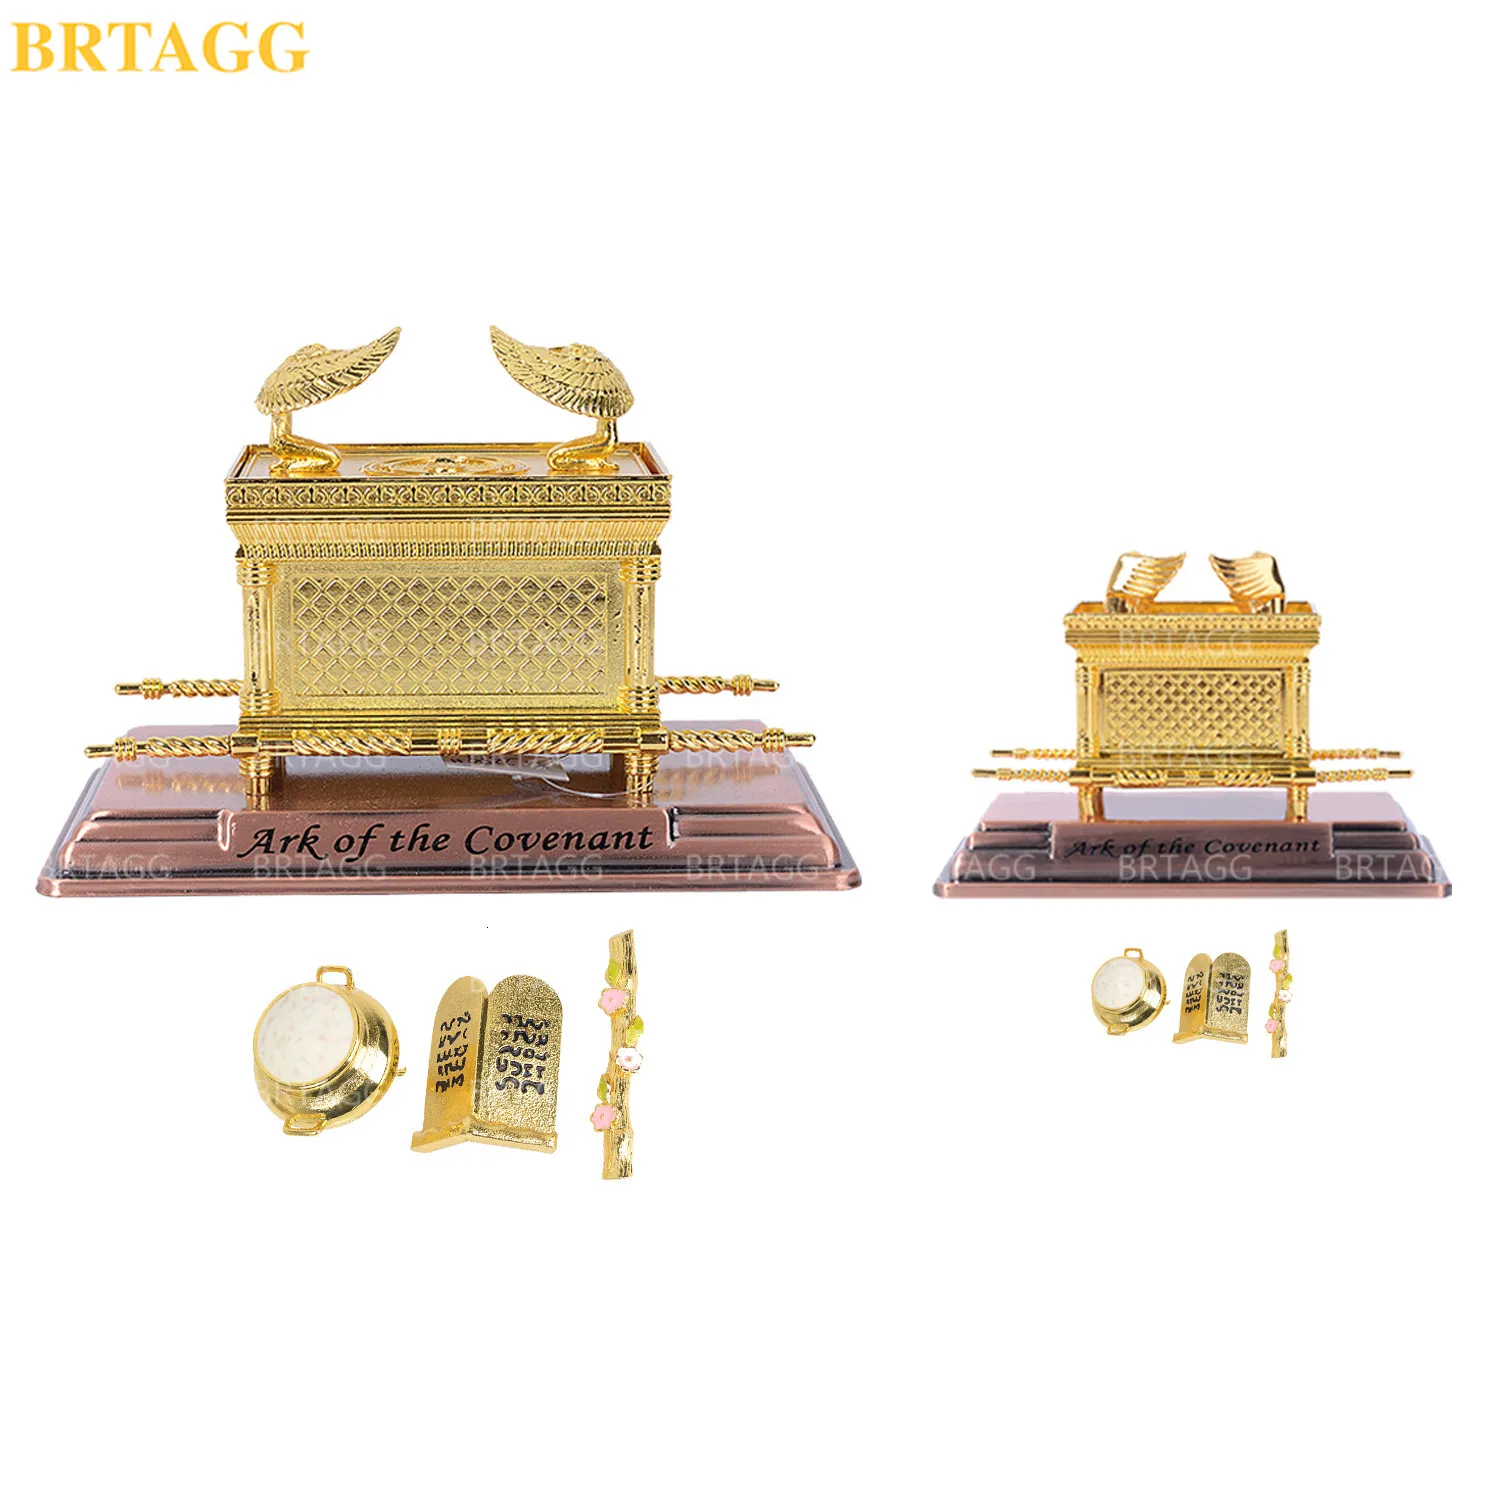 Obiekty dekoracyjne figurki brtagg metal arka repliki przymierza posąg złota z zawartością pręta Aarona / manna / dziesięć przykazań Stone 230830